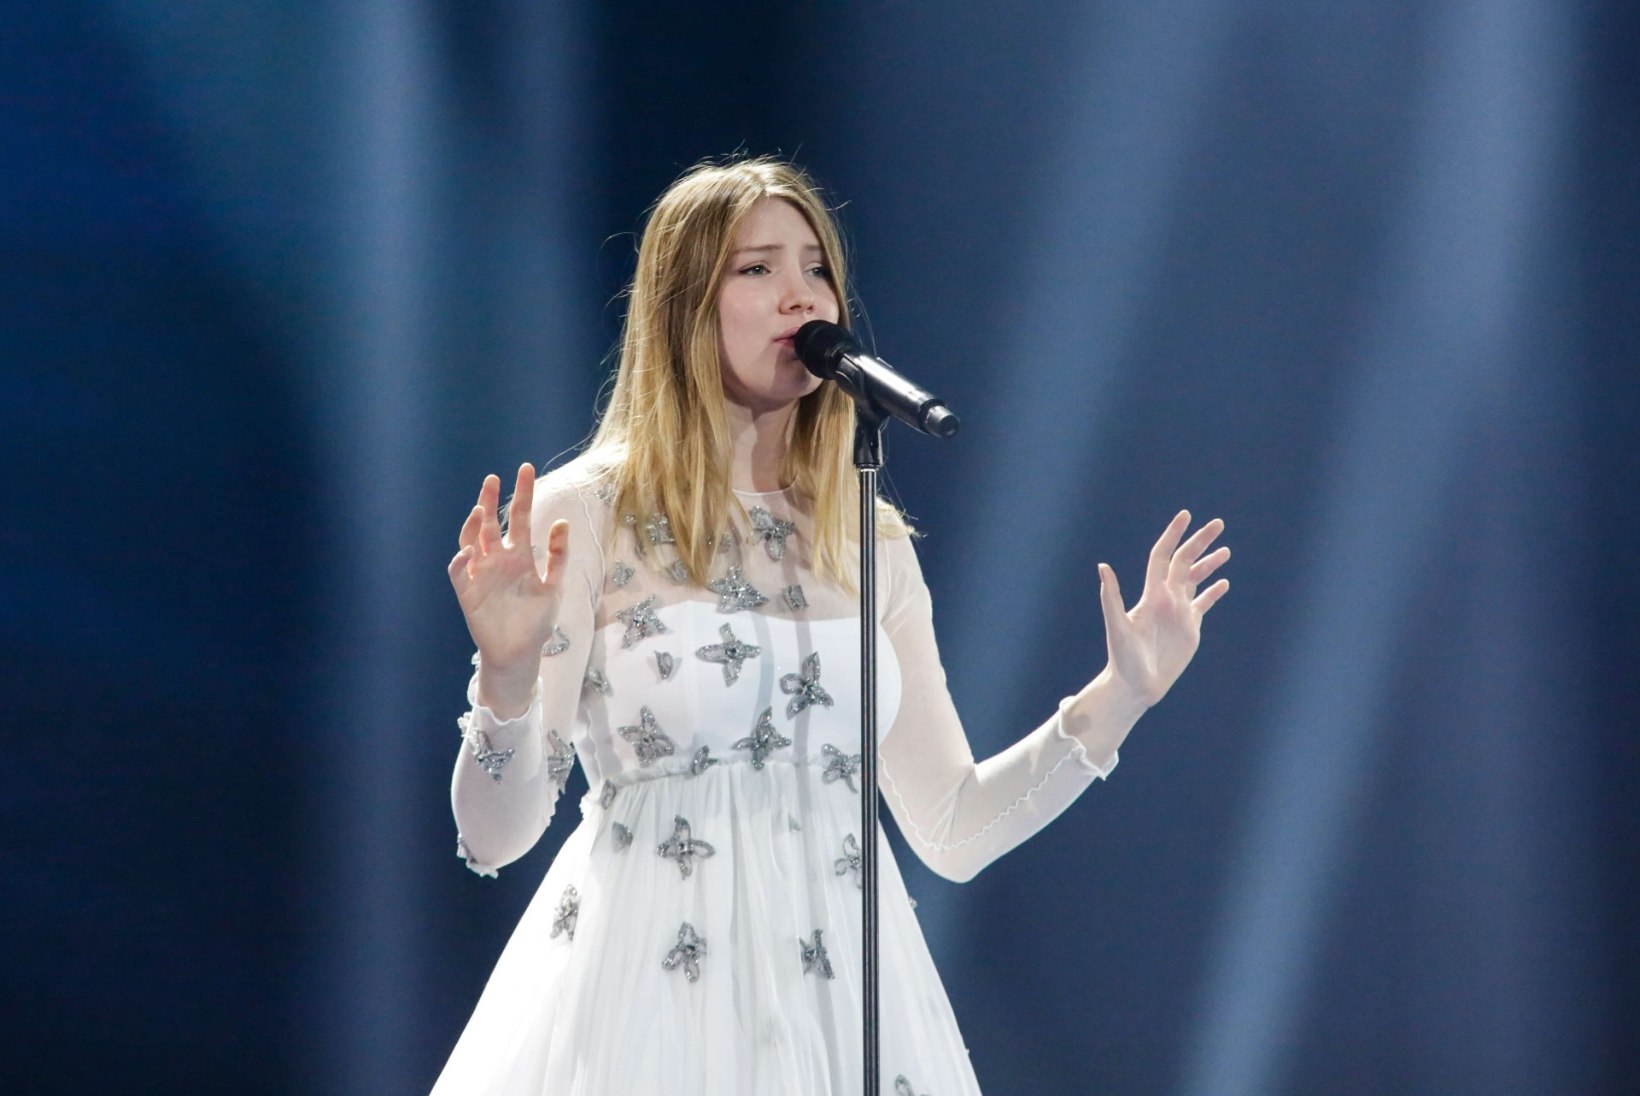 FOTOD | Eurovisioni esimene poolfinaal: kellel on kõige julgem lõhik, kes on noorim osaleja?